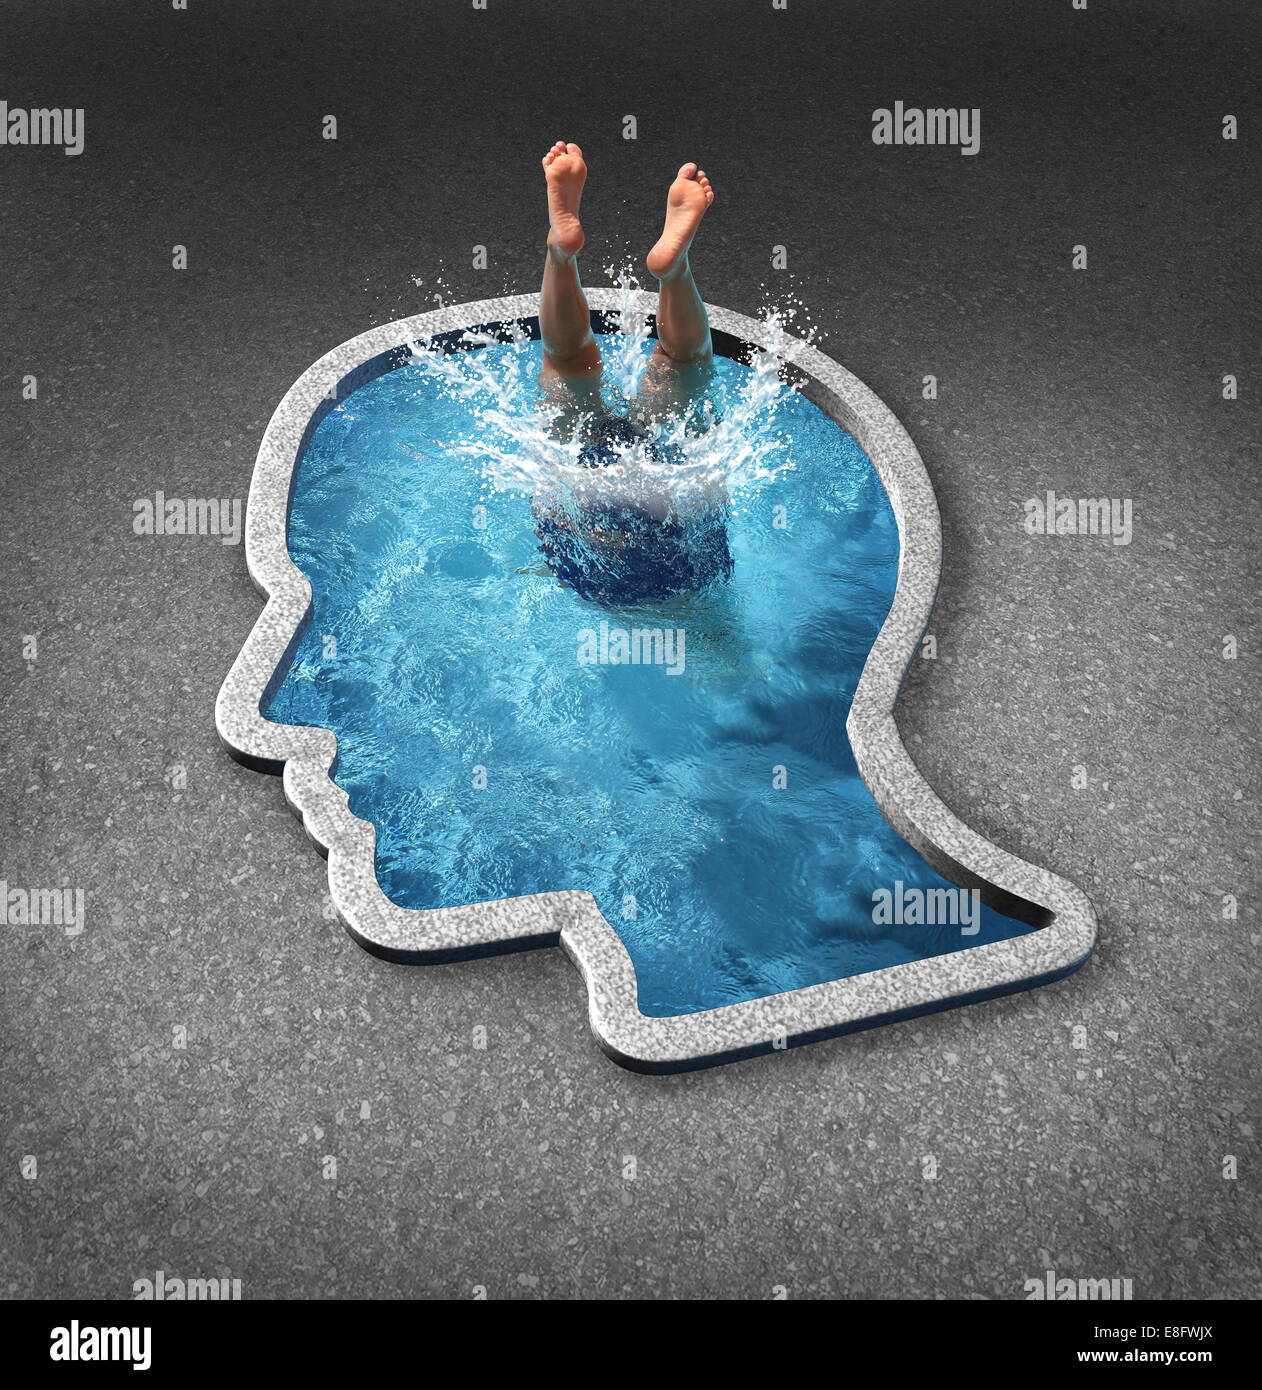 La profondità di pensiero e anima il concetto di ricerca con una persona immergersi in una piscina a forma di un volto umano come un simbolo di auto esame e salute mentale problemi relativi ai sentimenti interiori ed emozioni. Foto Stock